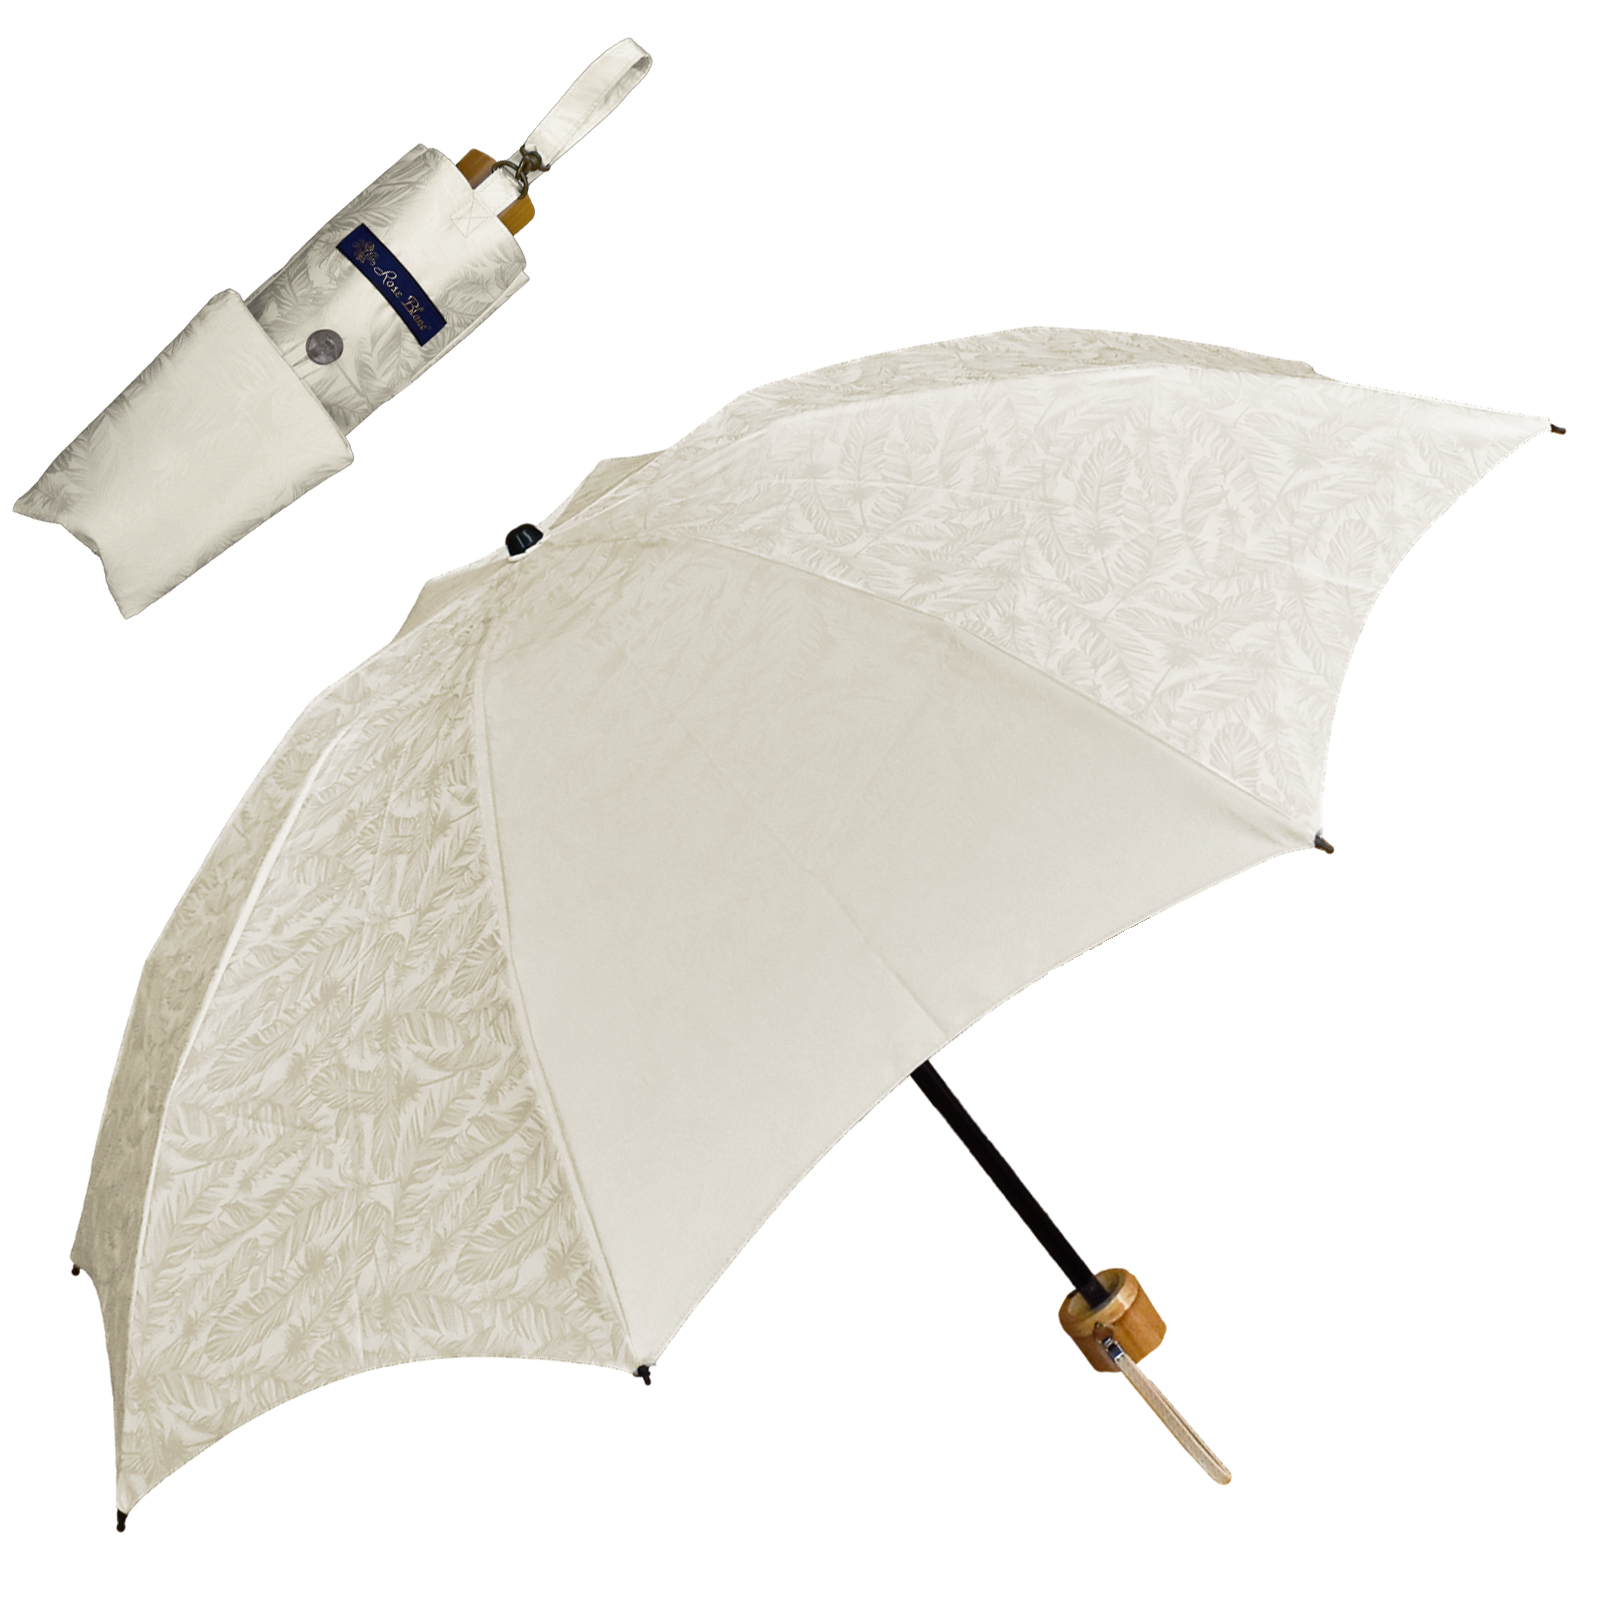 日傘 完全遮光 折りたたみ uv 軽量 晴雨兼用 3段 折りたたみ傘 100% 1級遮光 涼しい お...